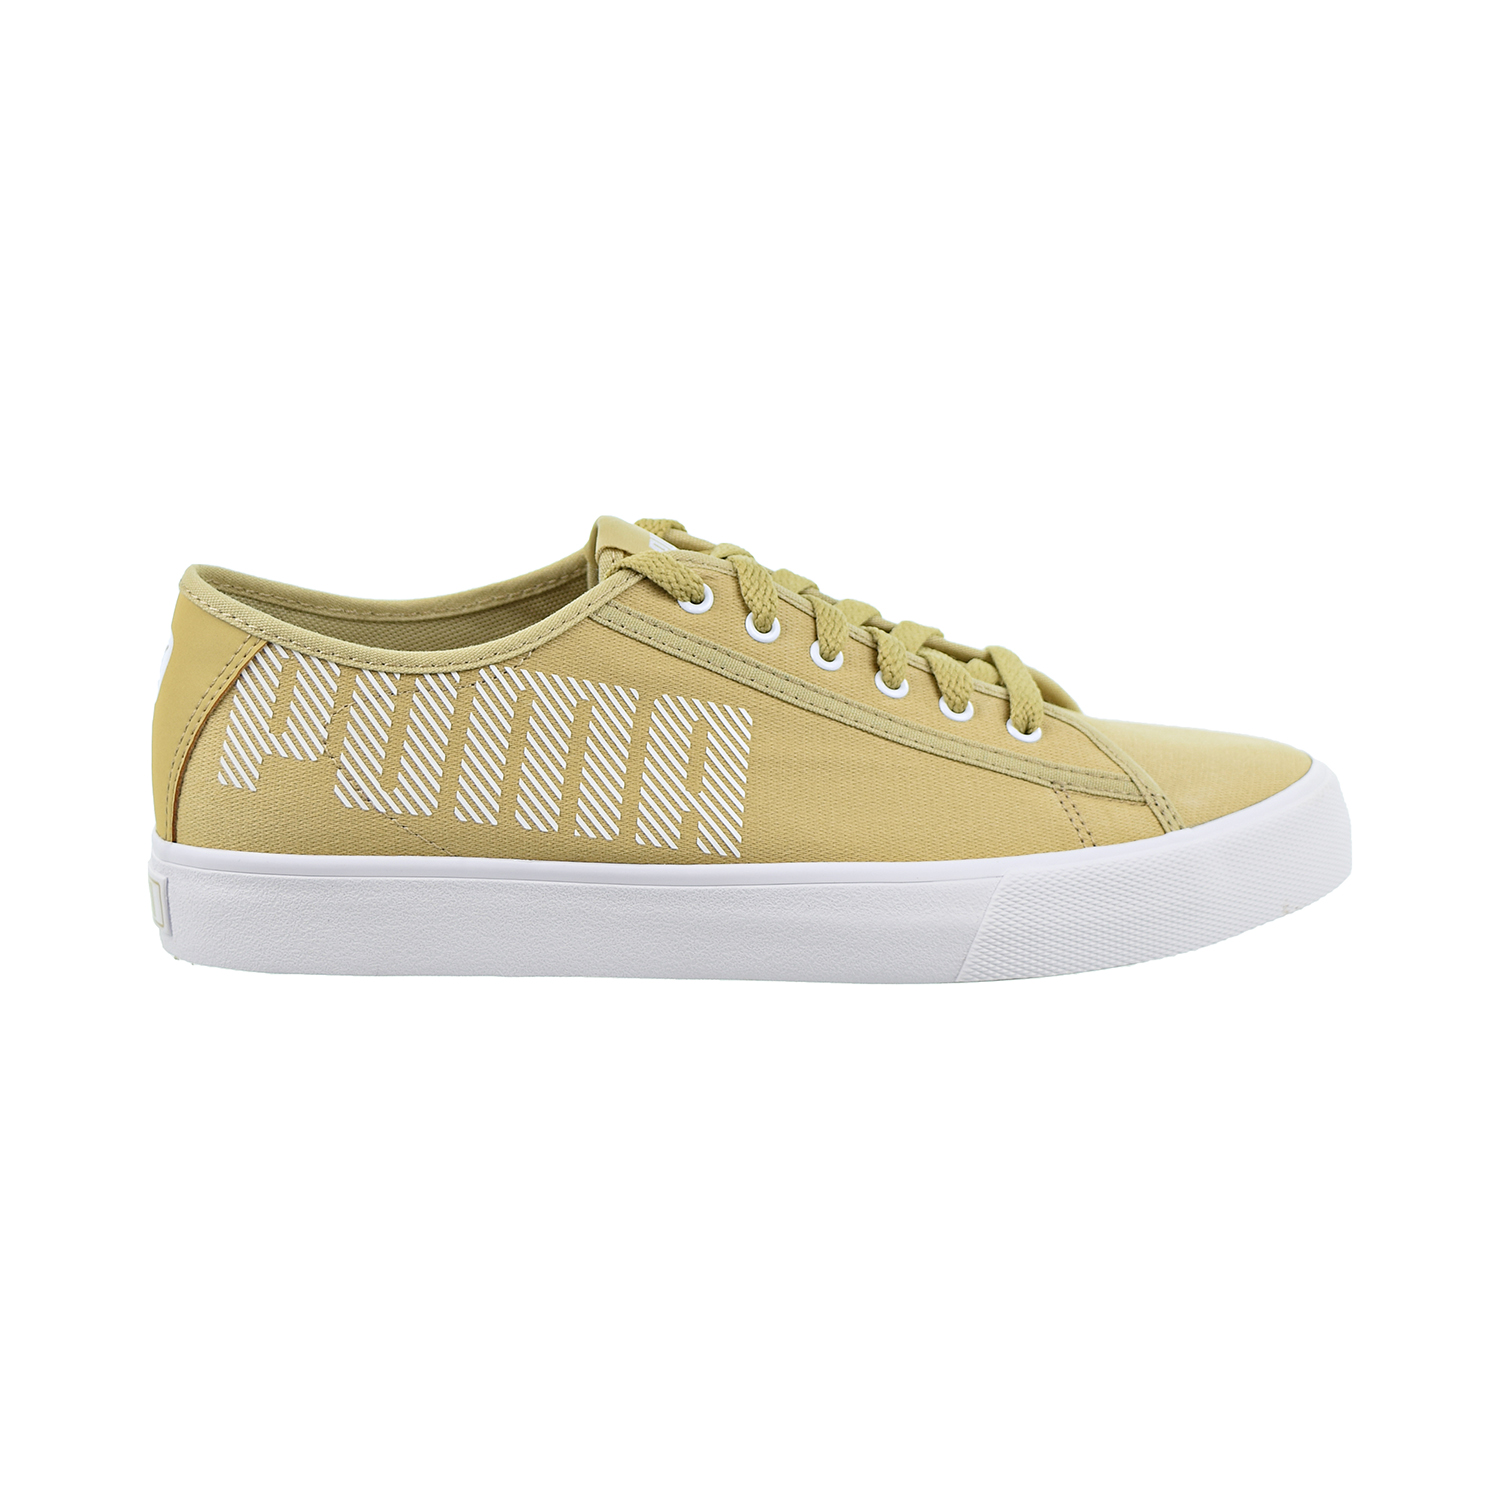 Puma Bari Bold Mens Shoes Taos Taupe/Puma White  369574-03 - image 1 of 6